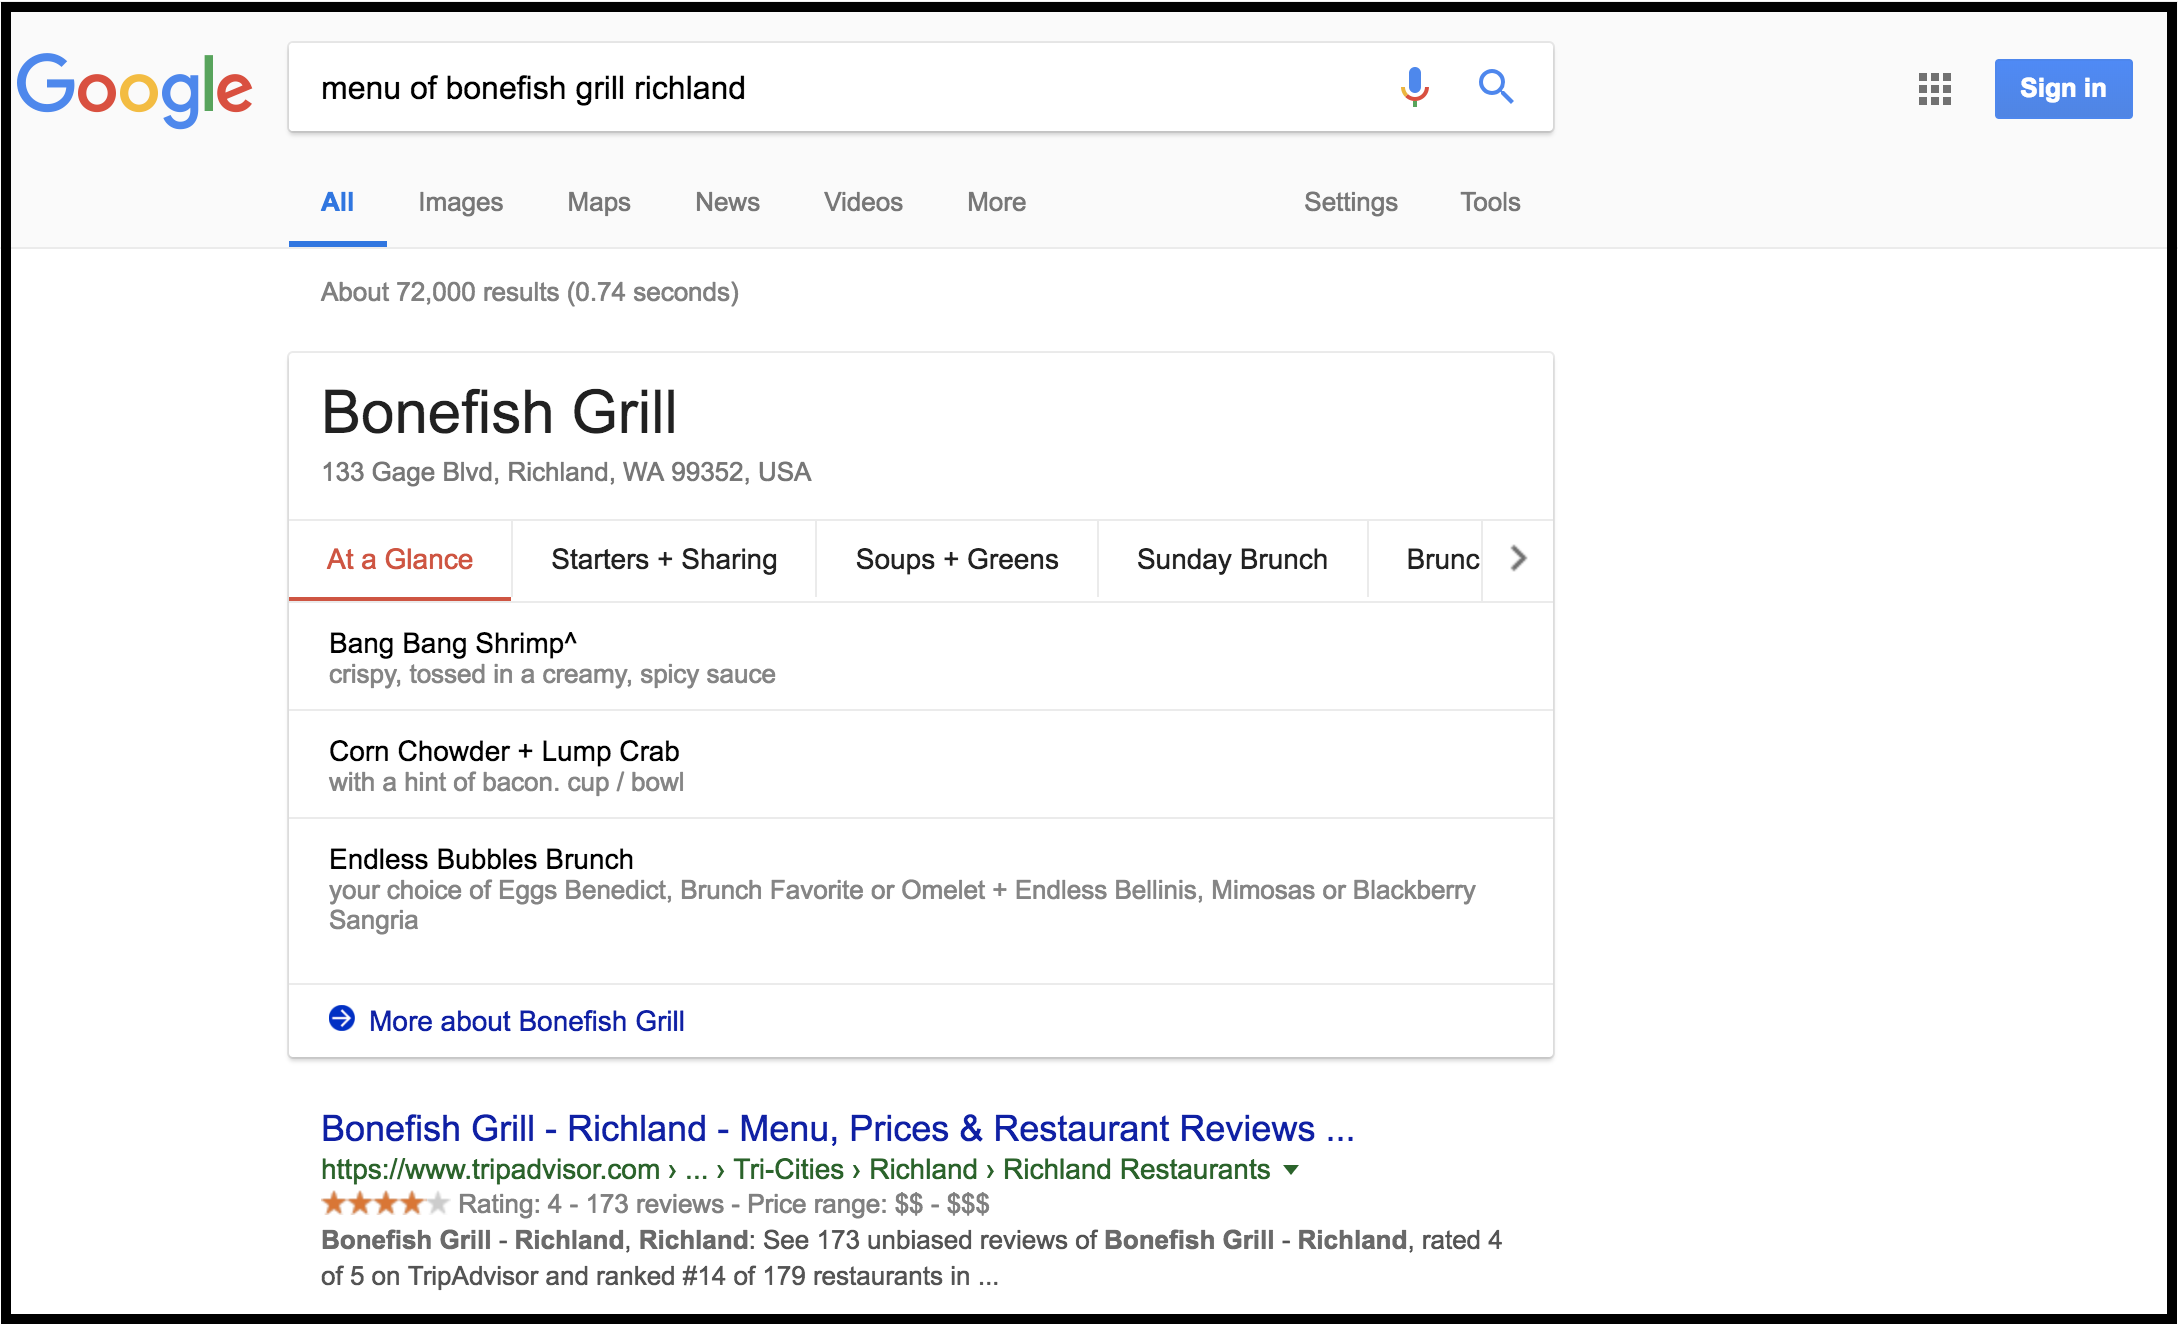 Google visualizza il menu di Bonefish Grill direttamente nella pagina dei risultati di ricerca